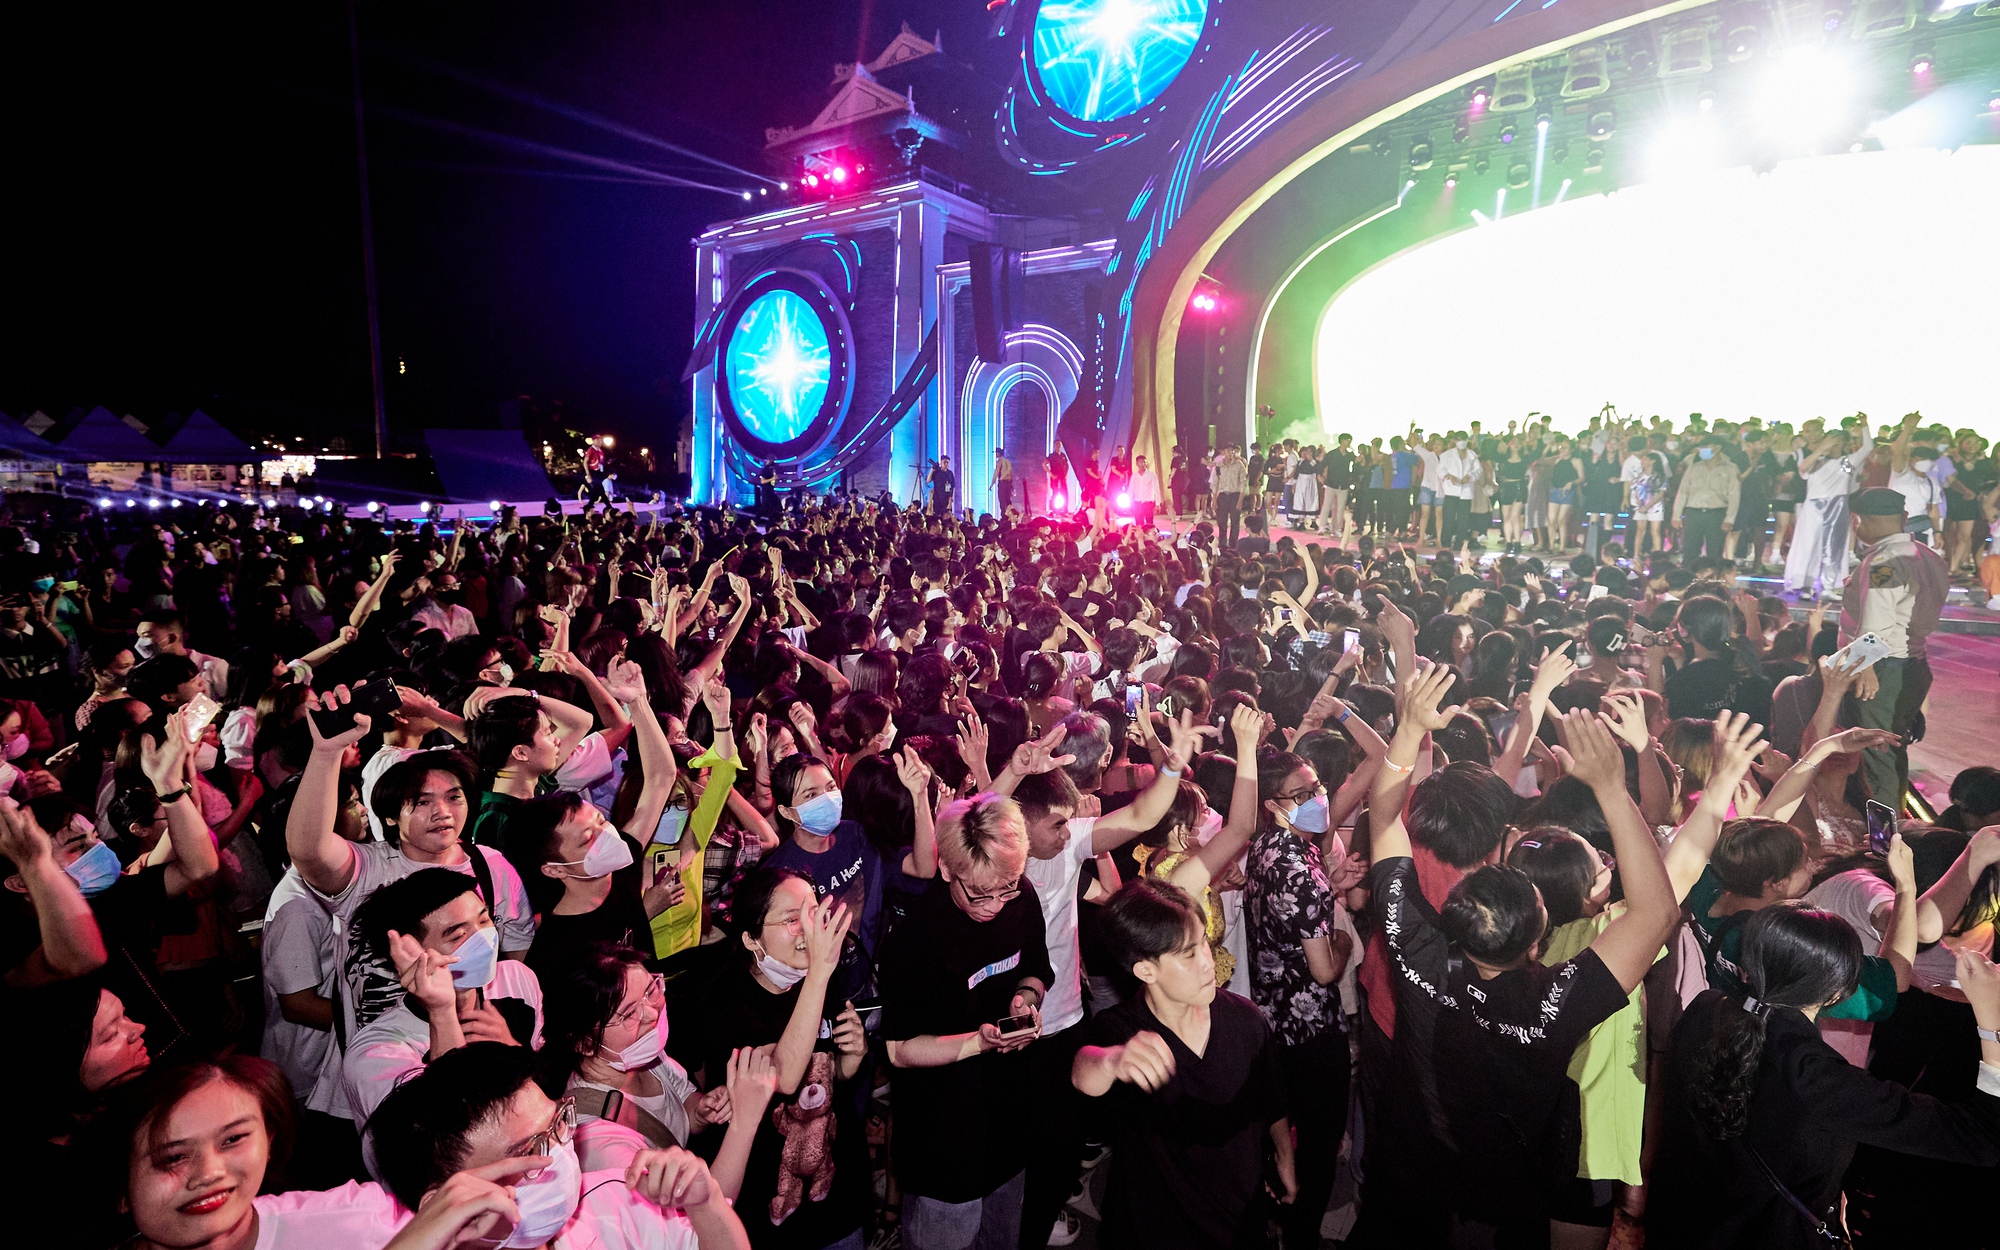 Hàng vạn khán giả bùng nổ với đại nhạc hội quy mô lớn tại Đà Nẵng